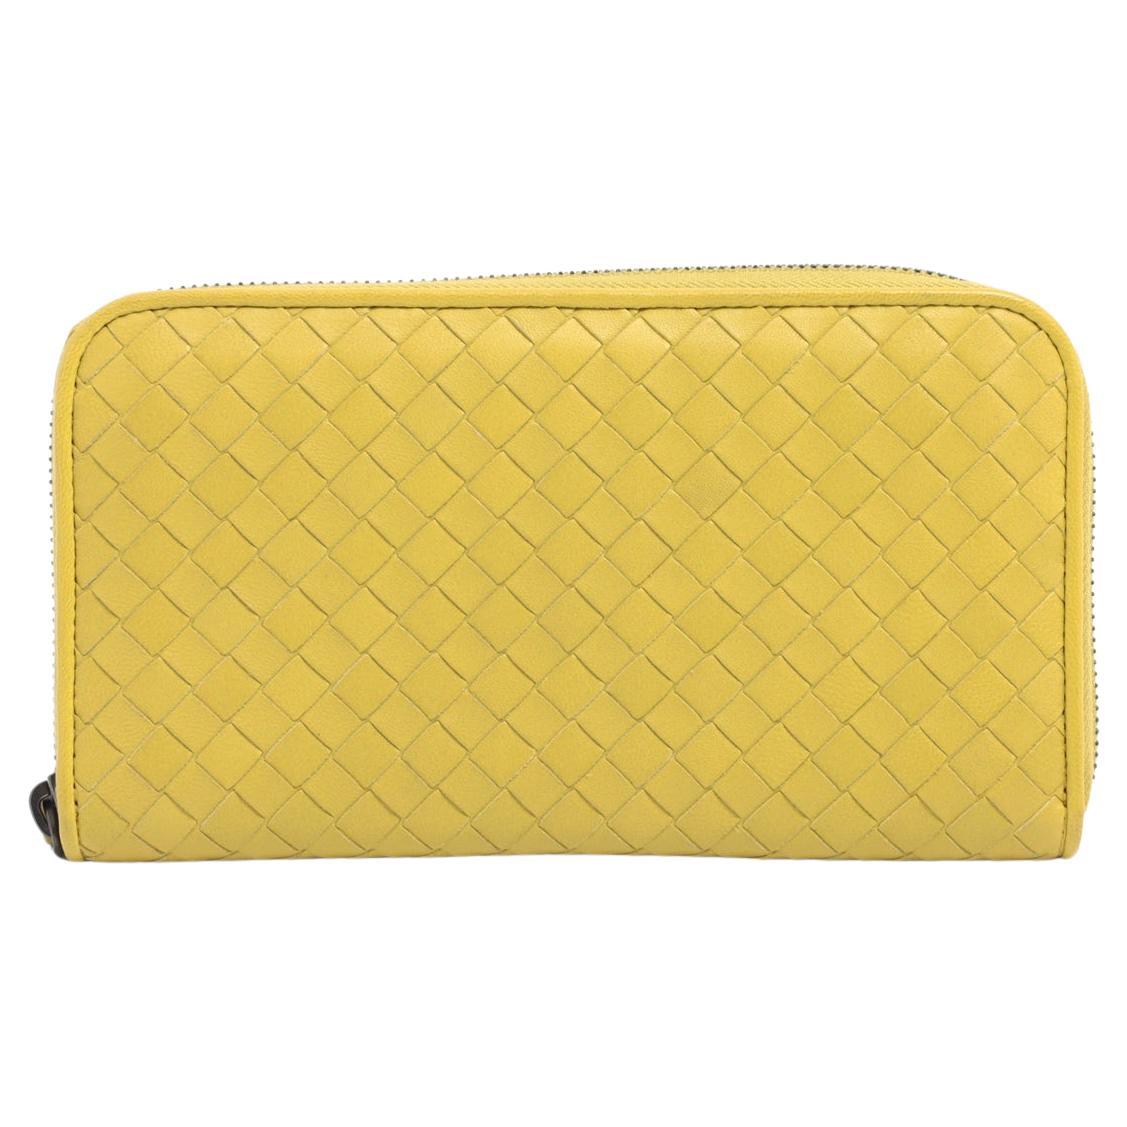 Bottega Veneta Intrecciato Leather Zippy Wallet Yellow Gold For Sale